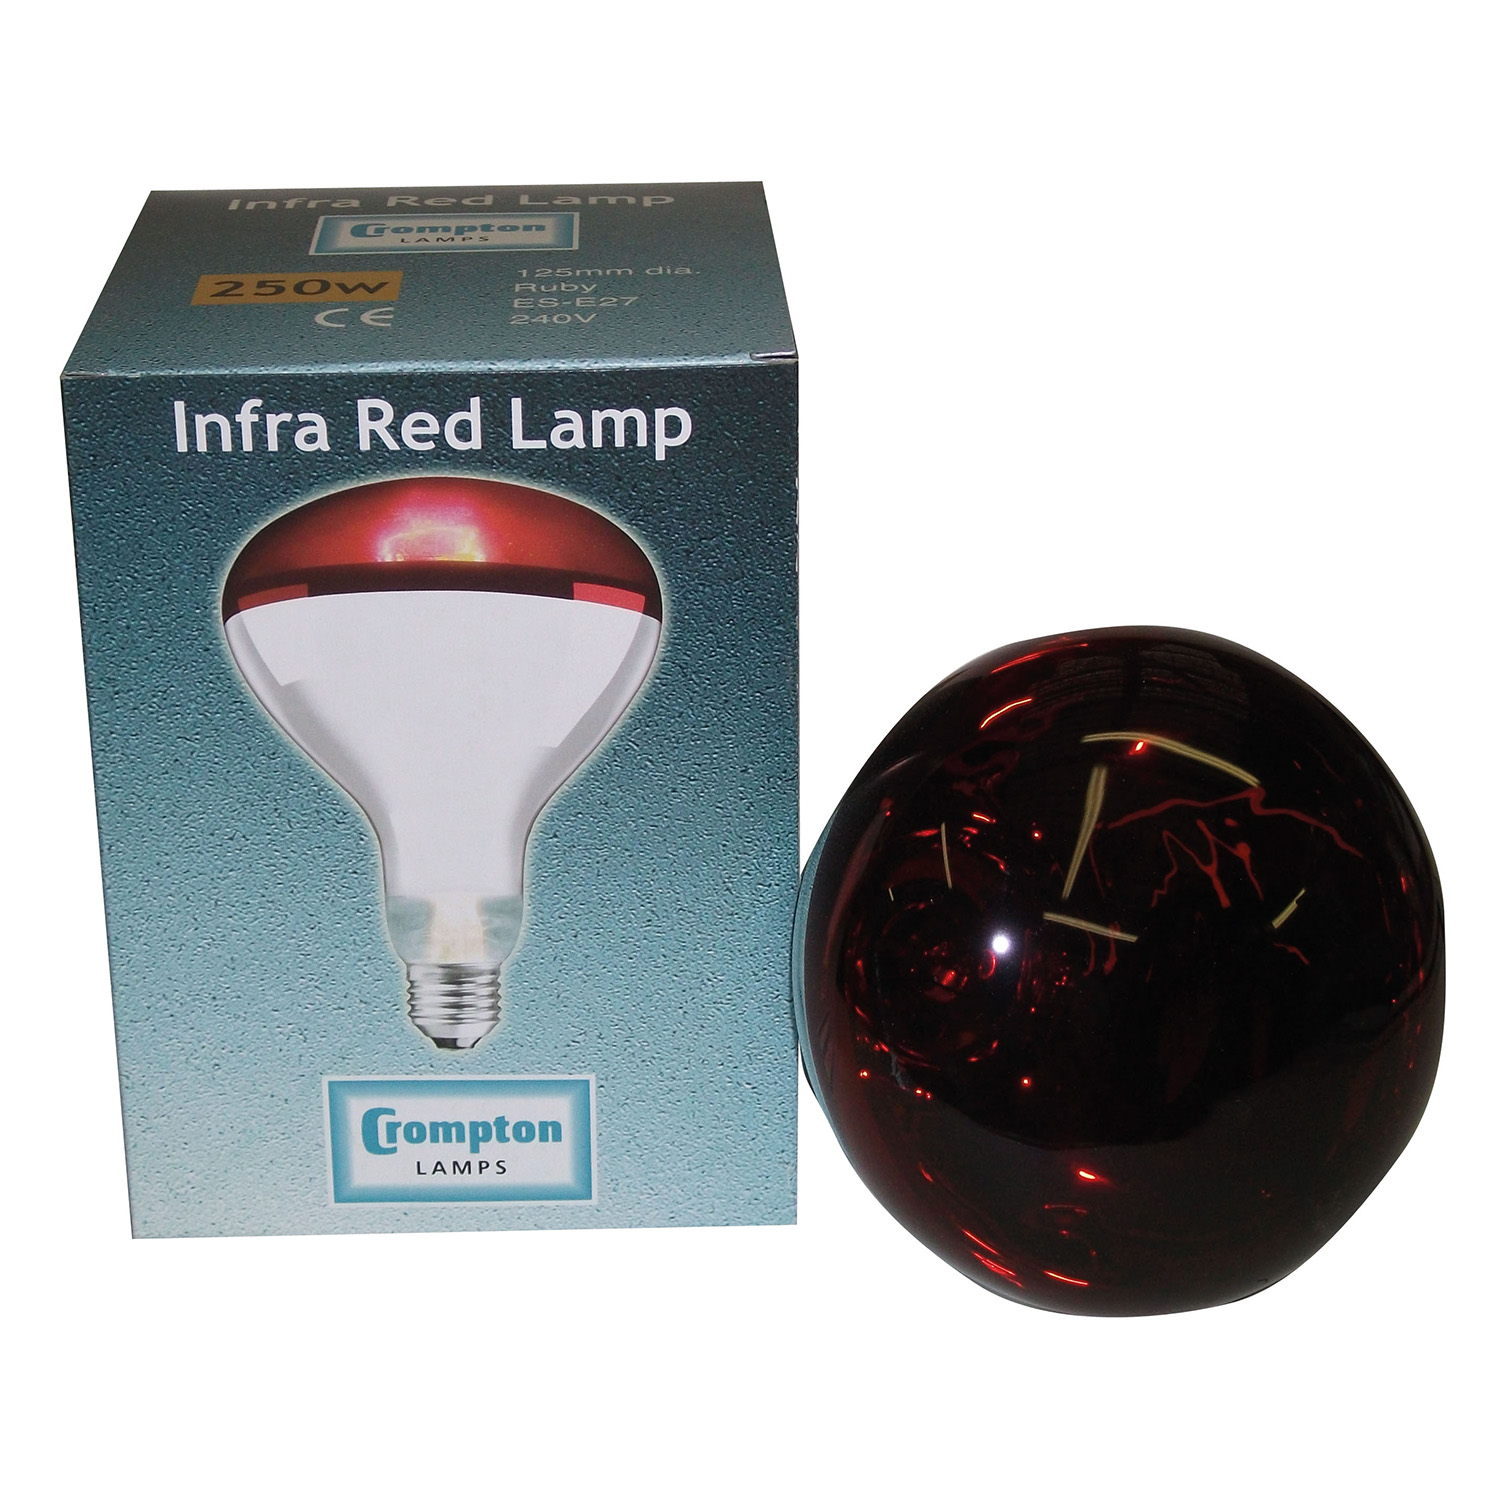 CROMPTON LAMP INFRA-RED ES RUBY 250 WATT